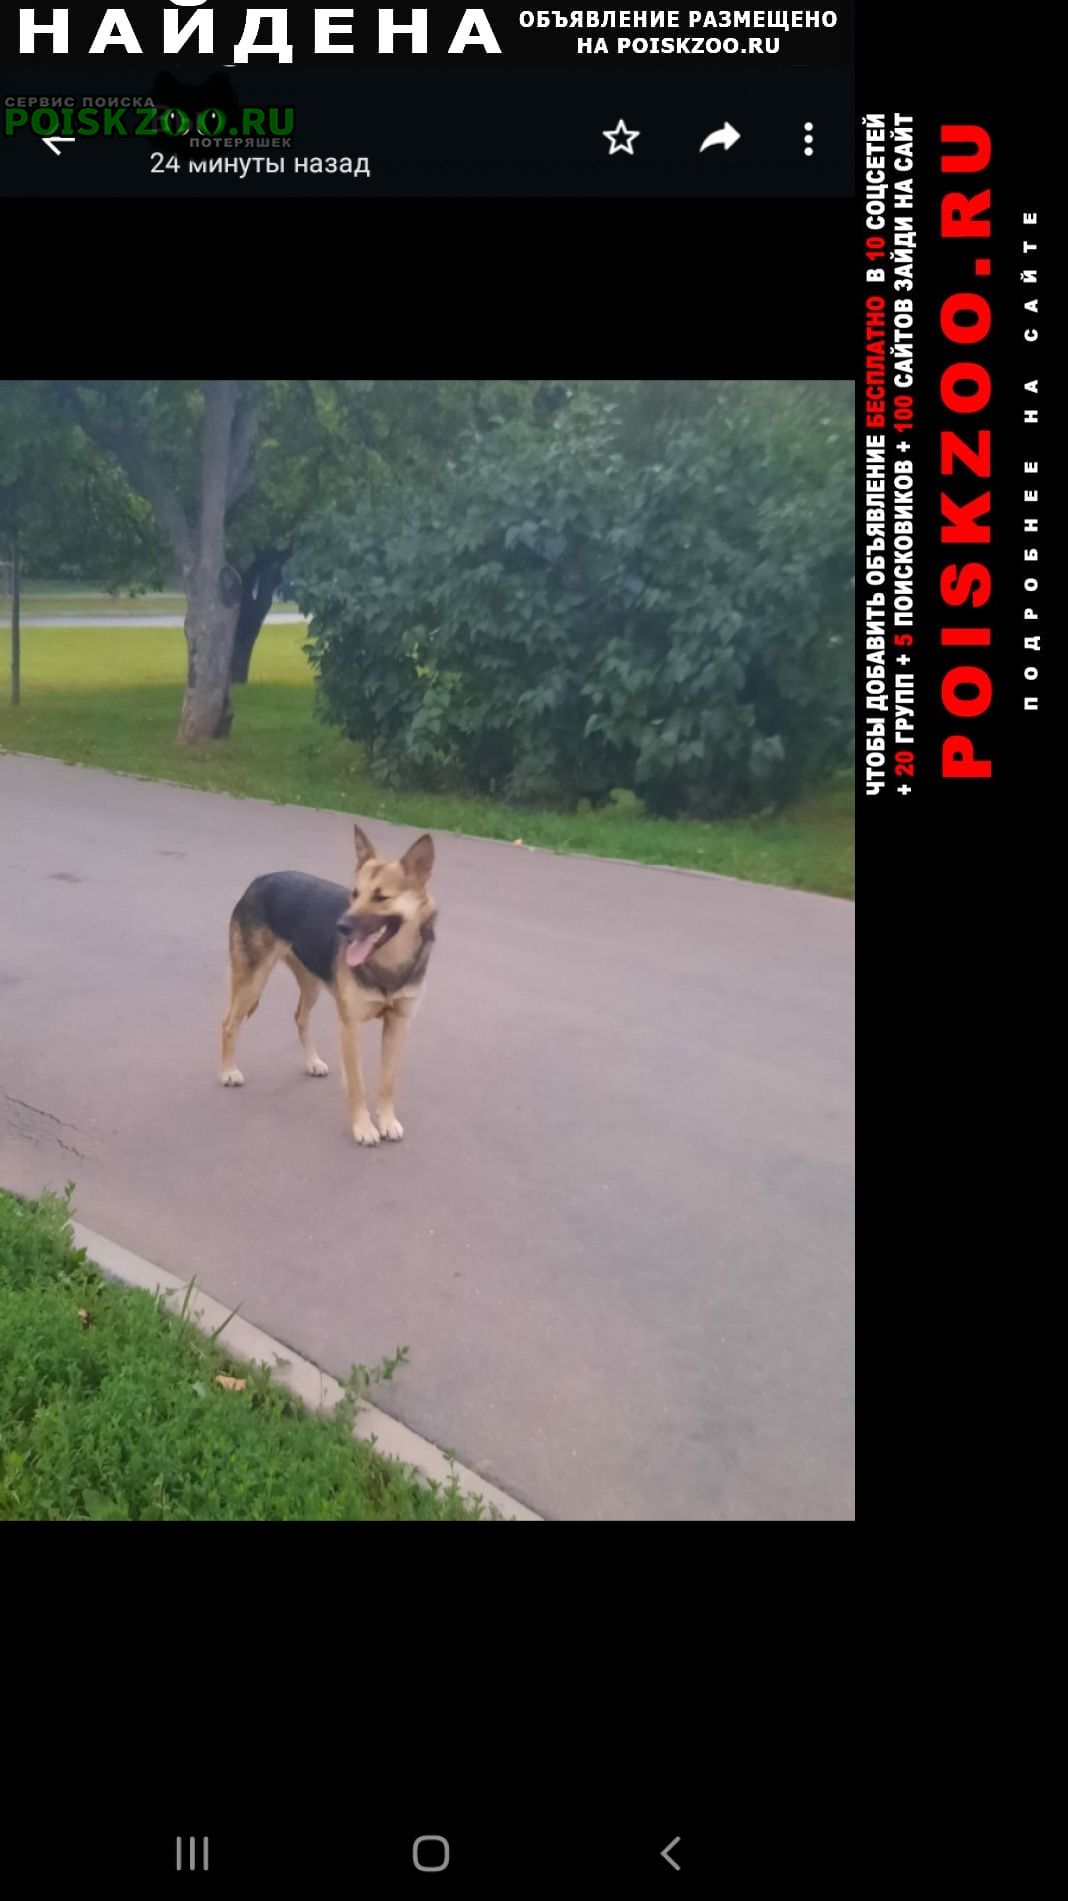 Найдена собака сука рыжеватая, домашняя, очень напугана Москва